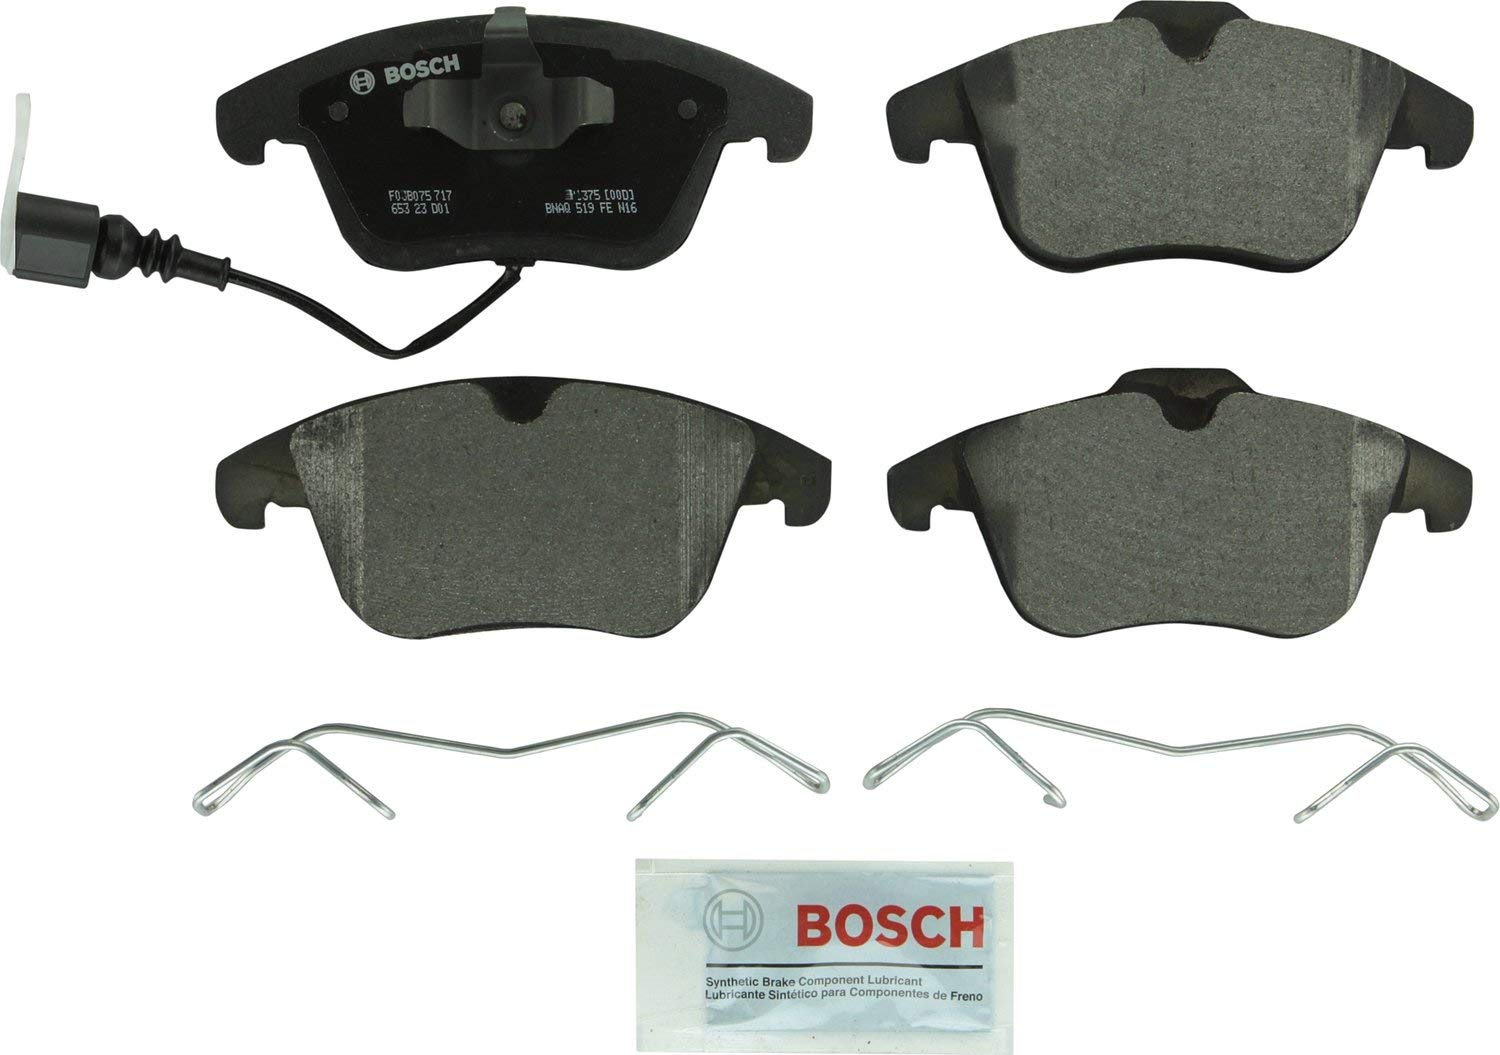 Bosch BP1375 QuietCast Premium Semi-Metallic Disc Brake Pad Set For: Audi Q3, Q3 Quattro; Ford Mondeo; Volkswagen Passat, Tiguan, Front